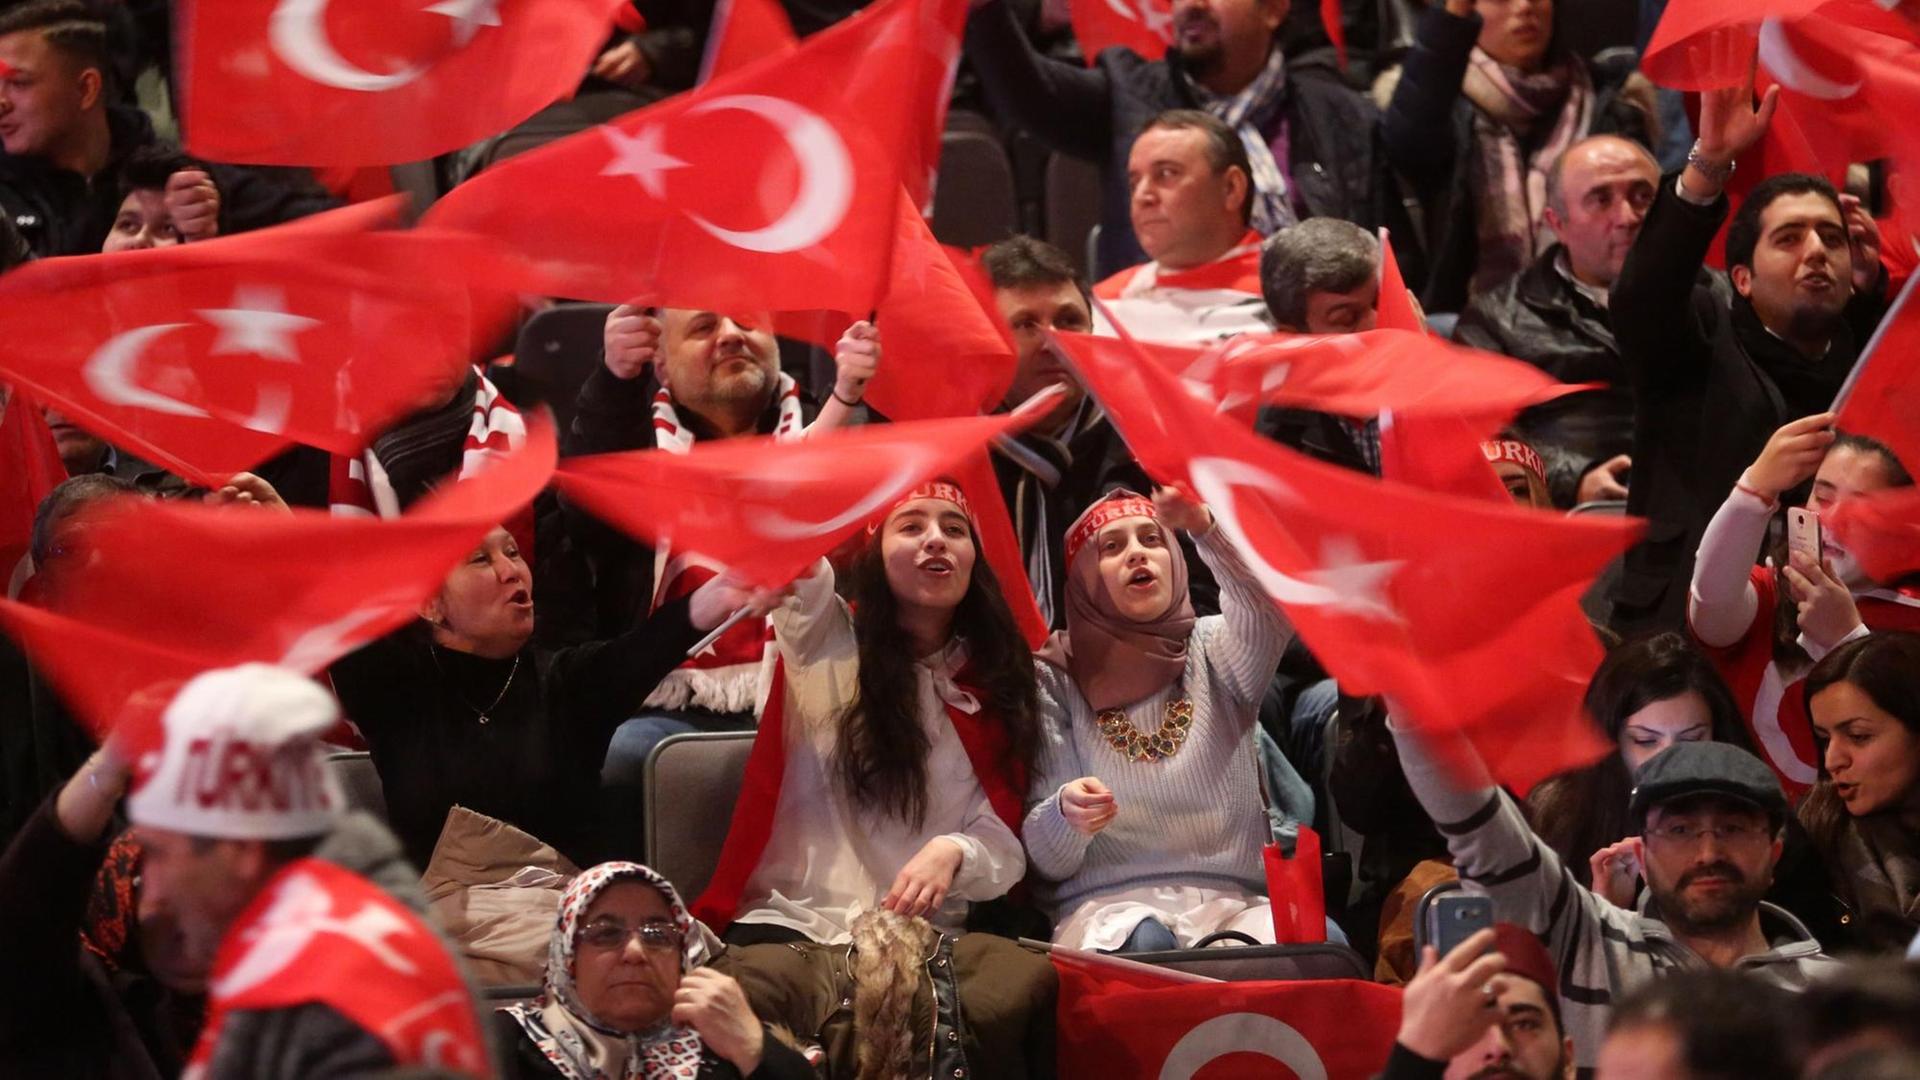 Teilnehmer bei einer Veranstaltung mit dem türkischen Ministerpräsidenten Yildirim halten am 18.02.2017 in Oberhausen (Nordrhein-Westfalen) türkische Fahnen in den Händen.